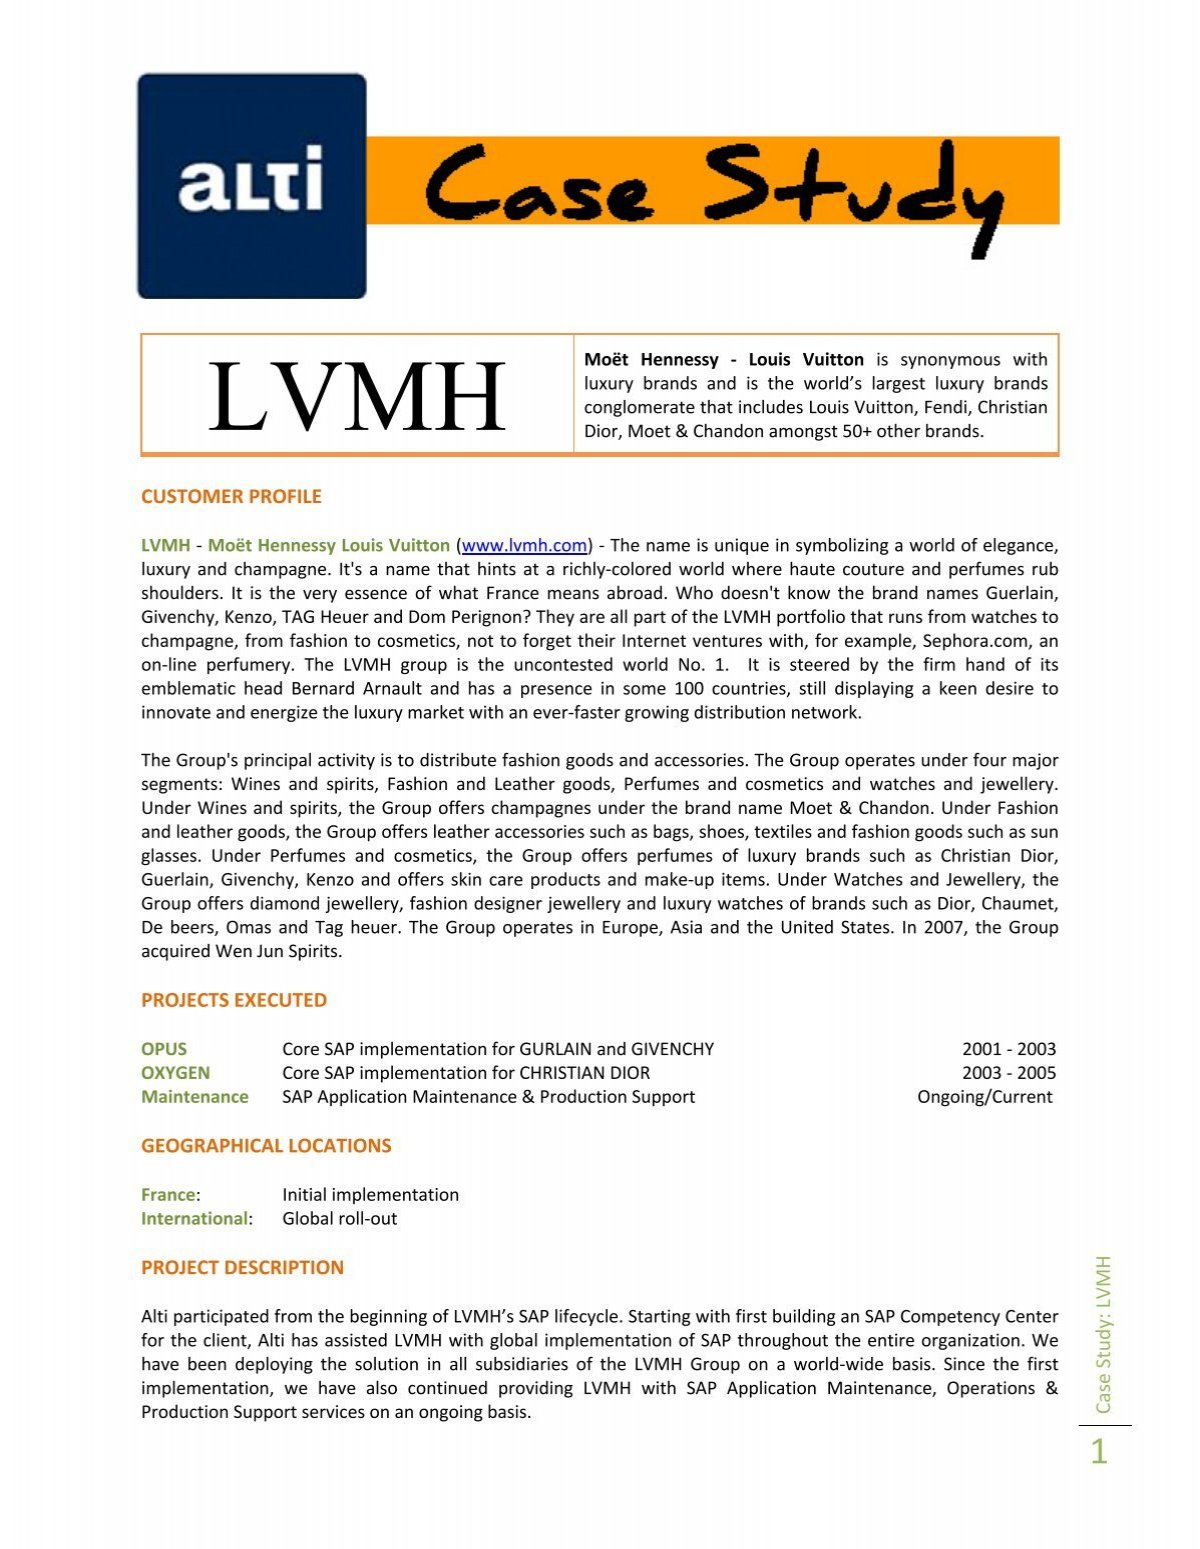 LVMH Client Services